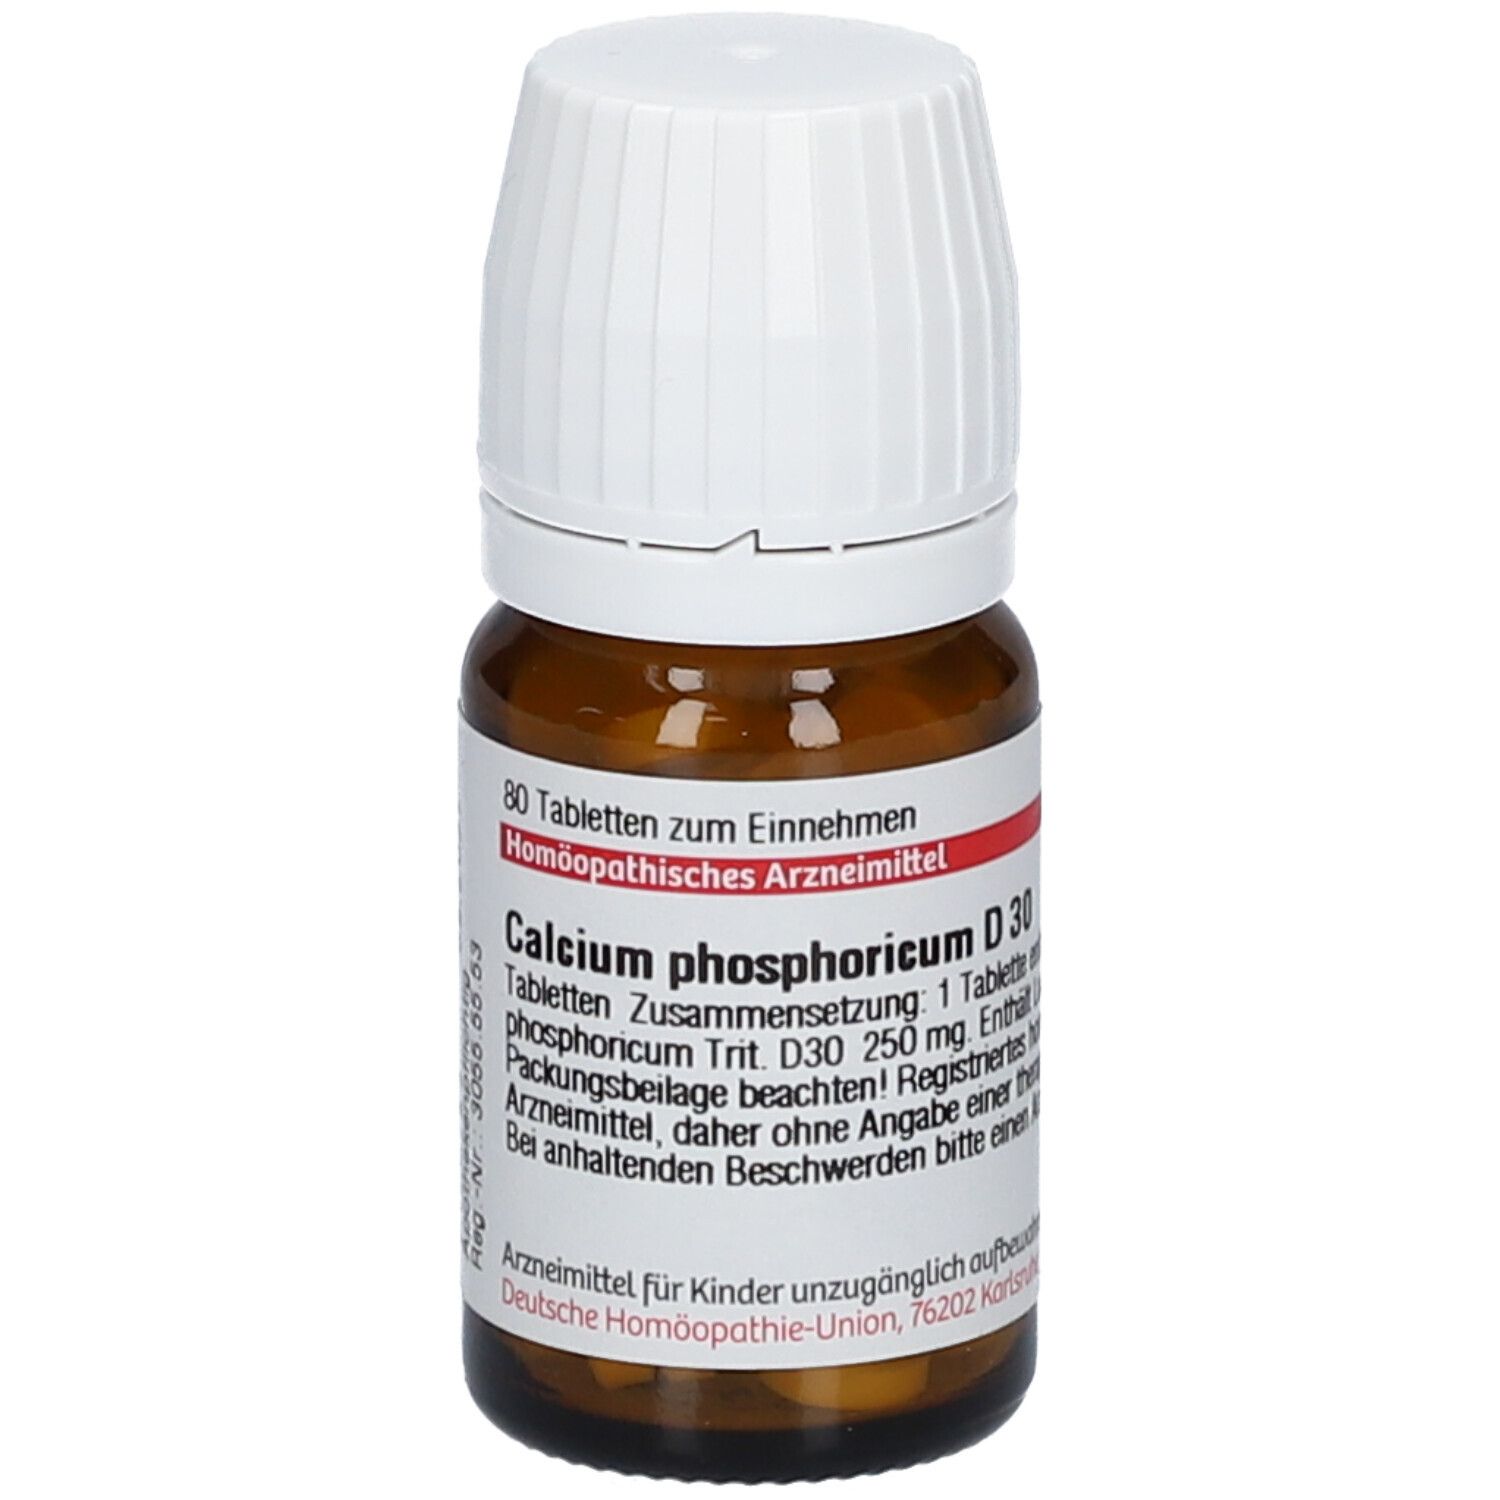 DHU Calcium Phosphoricum D30